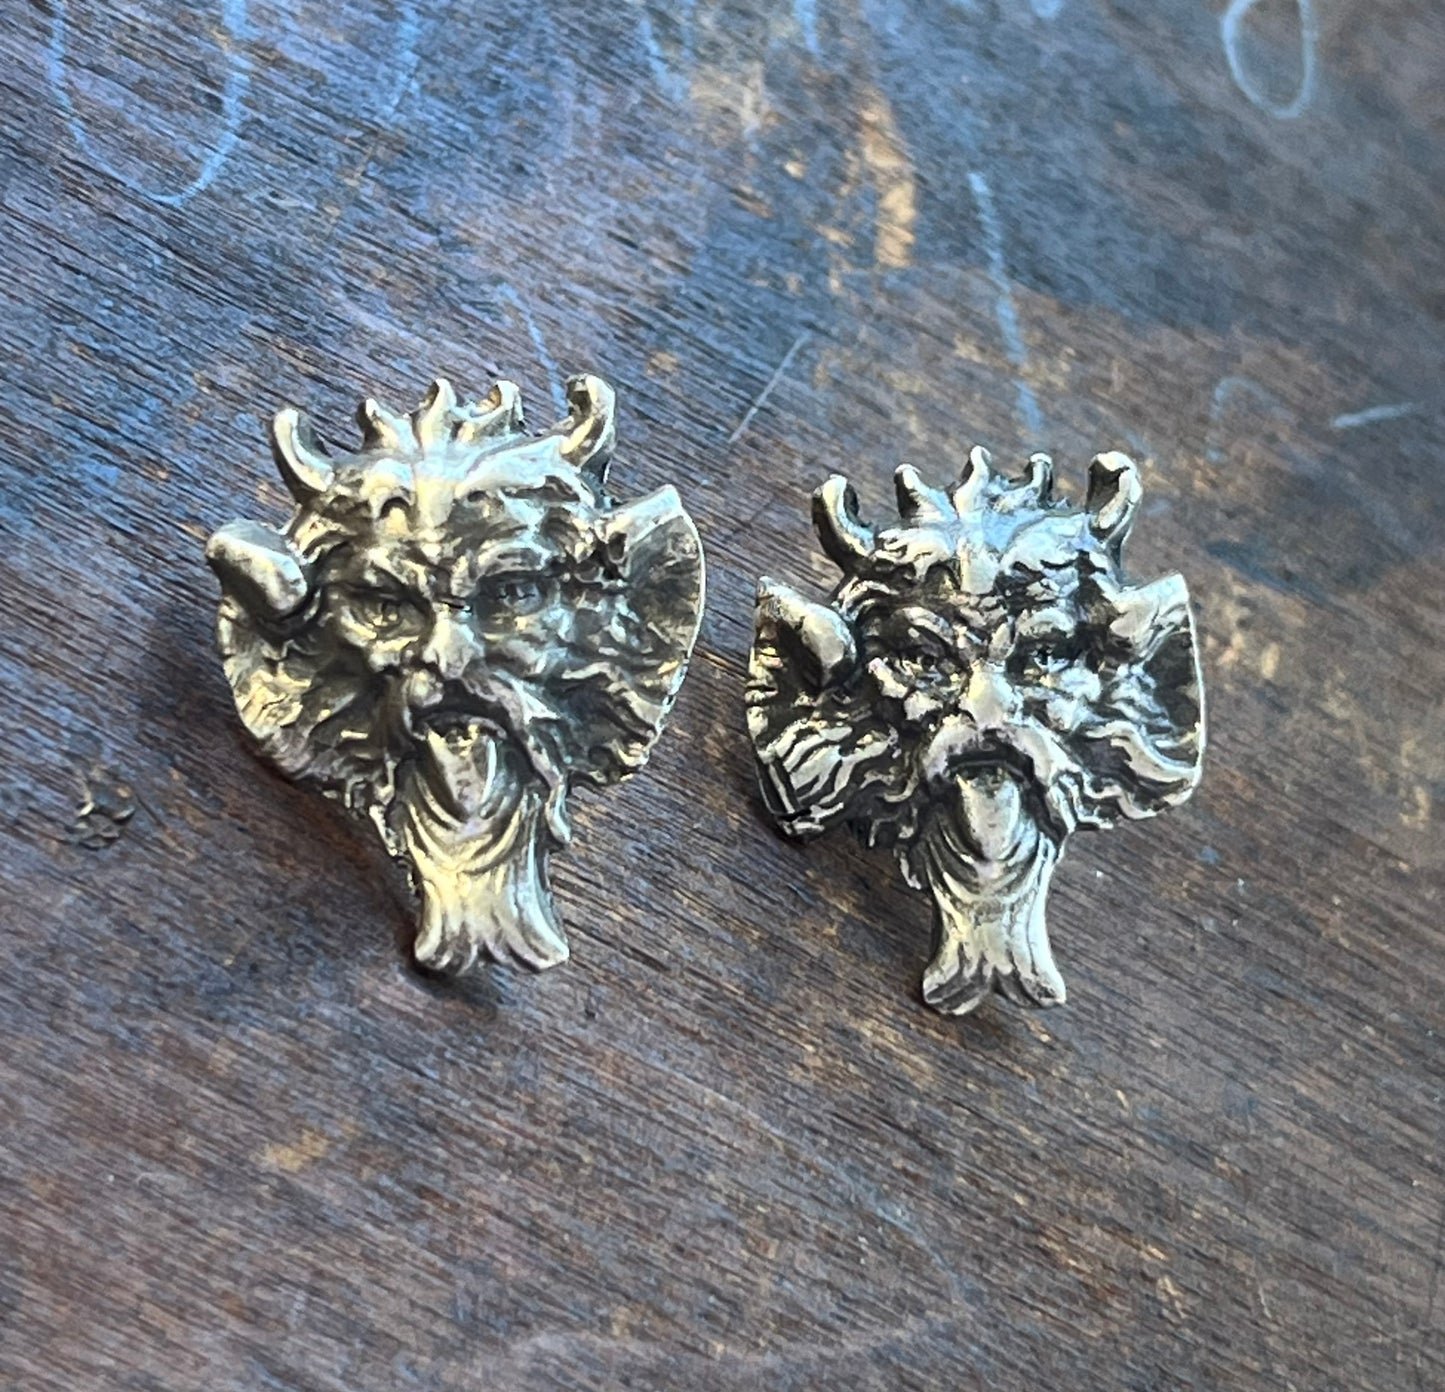 Handmade Vintage Inspired Silver Gargoyle Earring